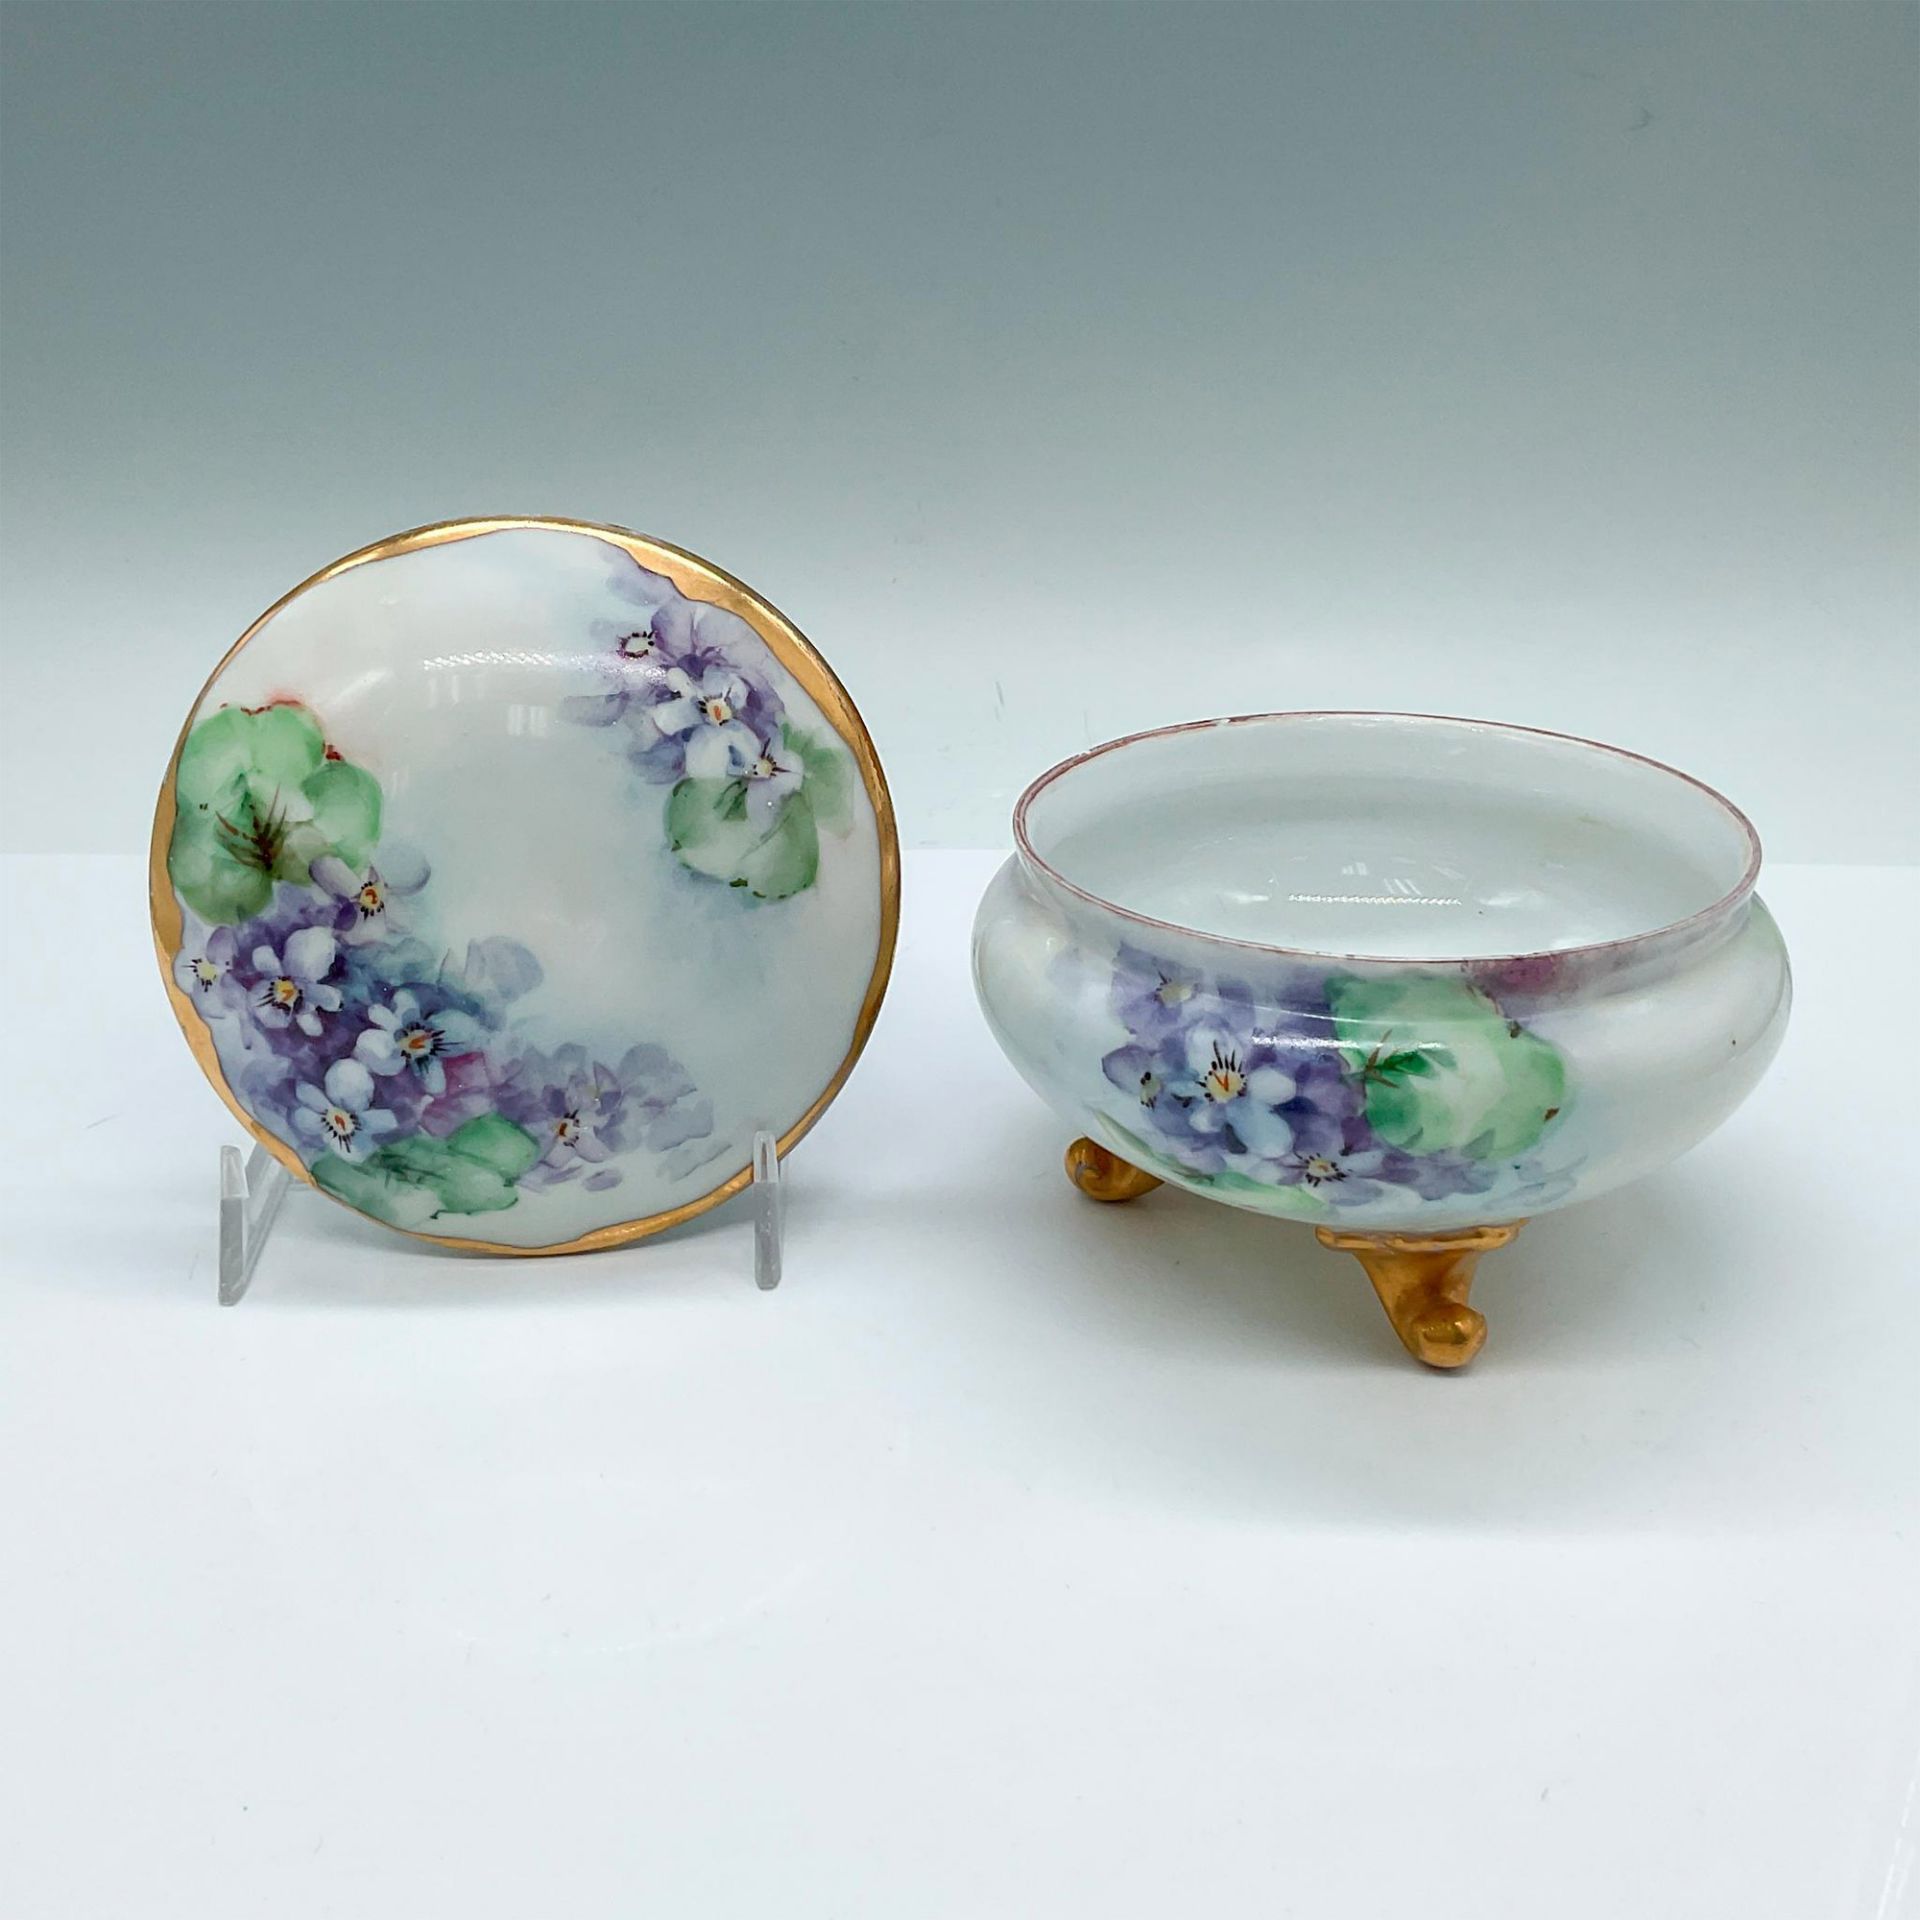 Vintage Porcelain Floral Dresser Box with Cover - Image 2 of 3